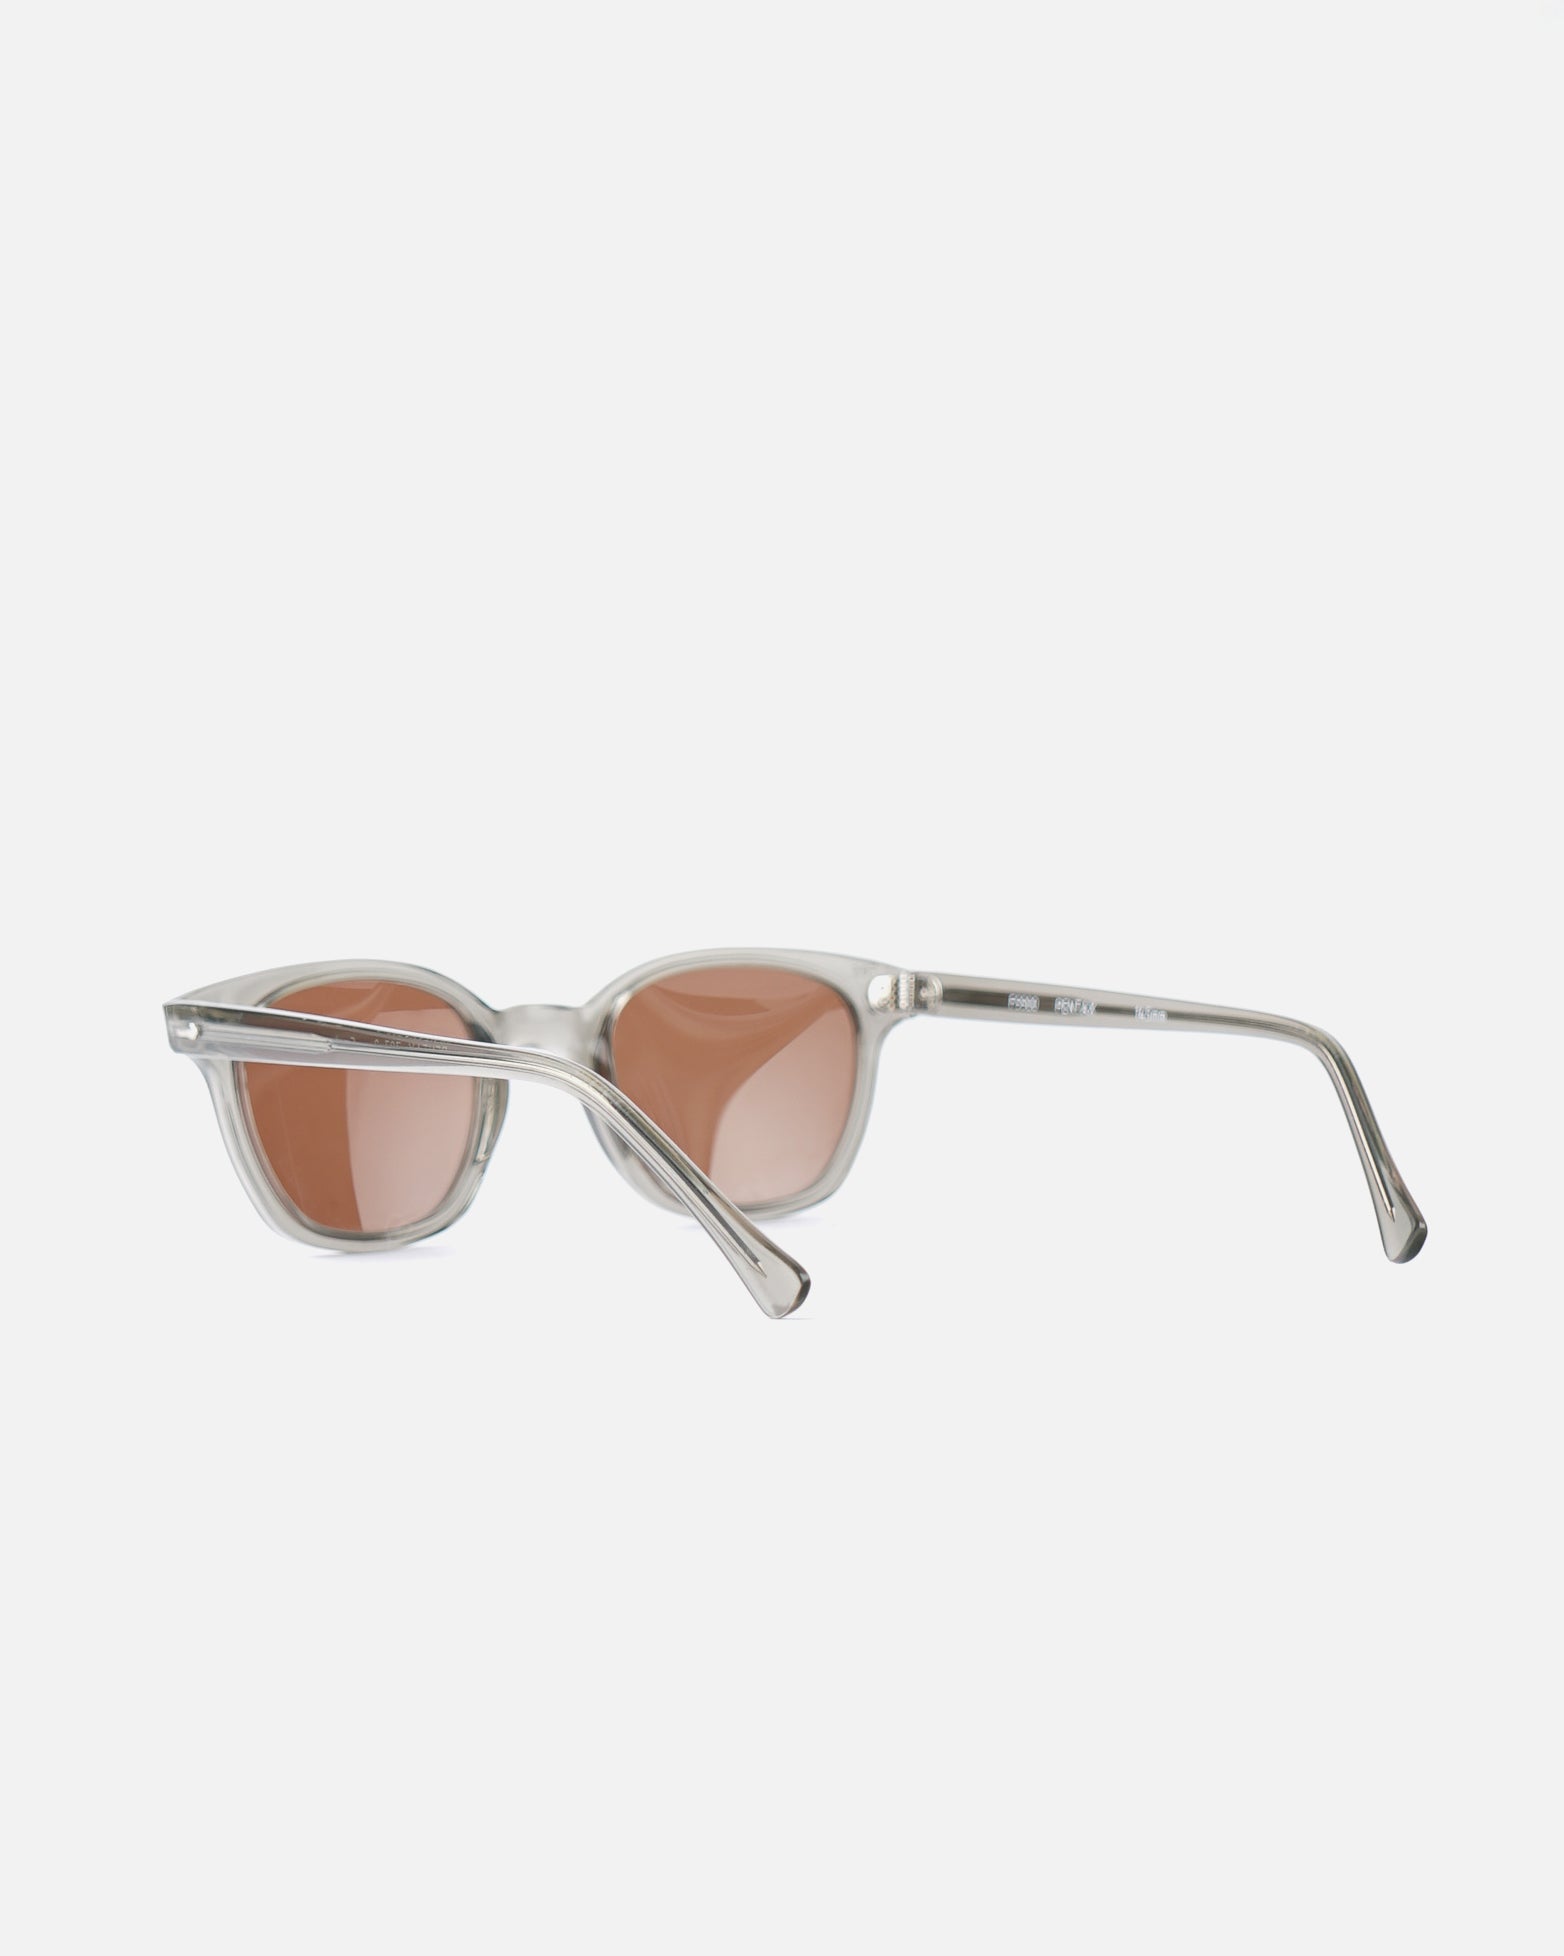 American Optical Smoke Clear Sunglasses